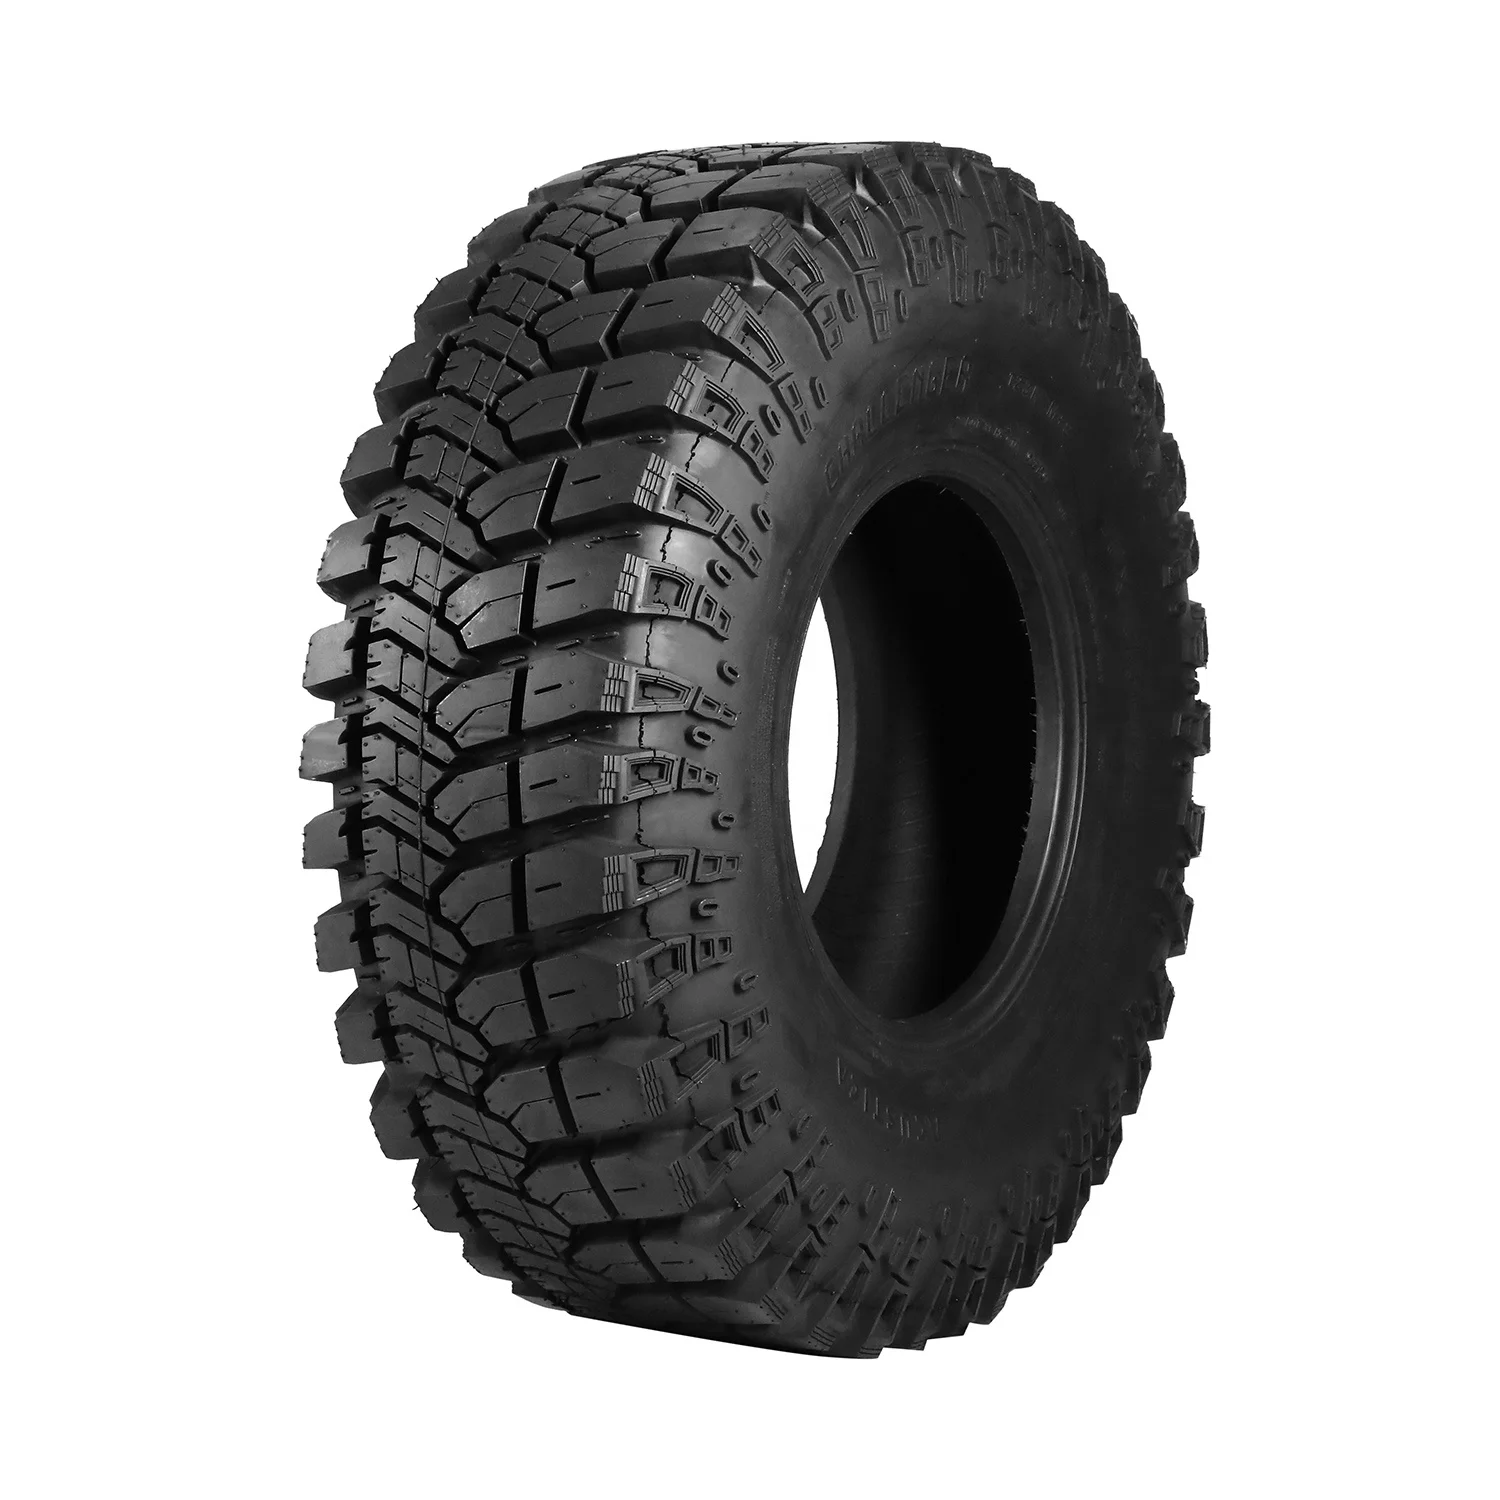 37X12.5R17 off road tires 40X13.5-17 mud| Alibaba.com